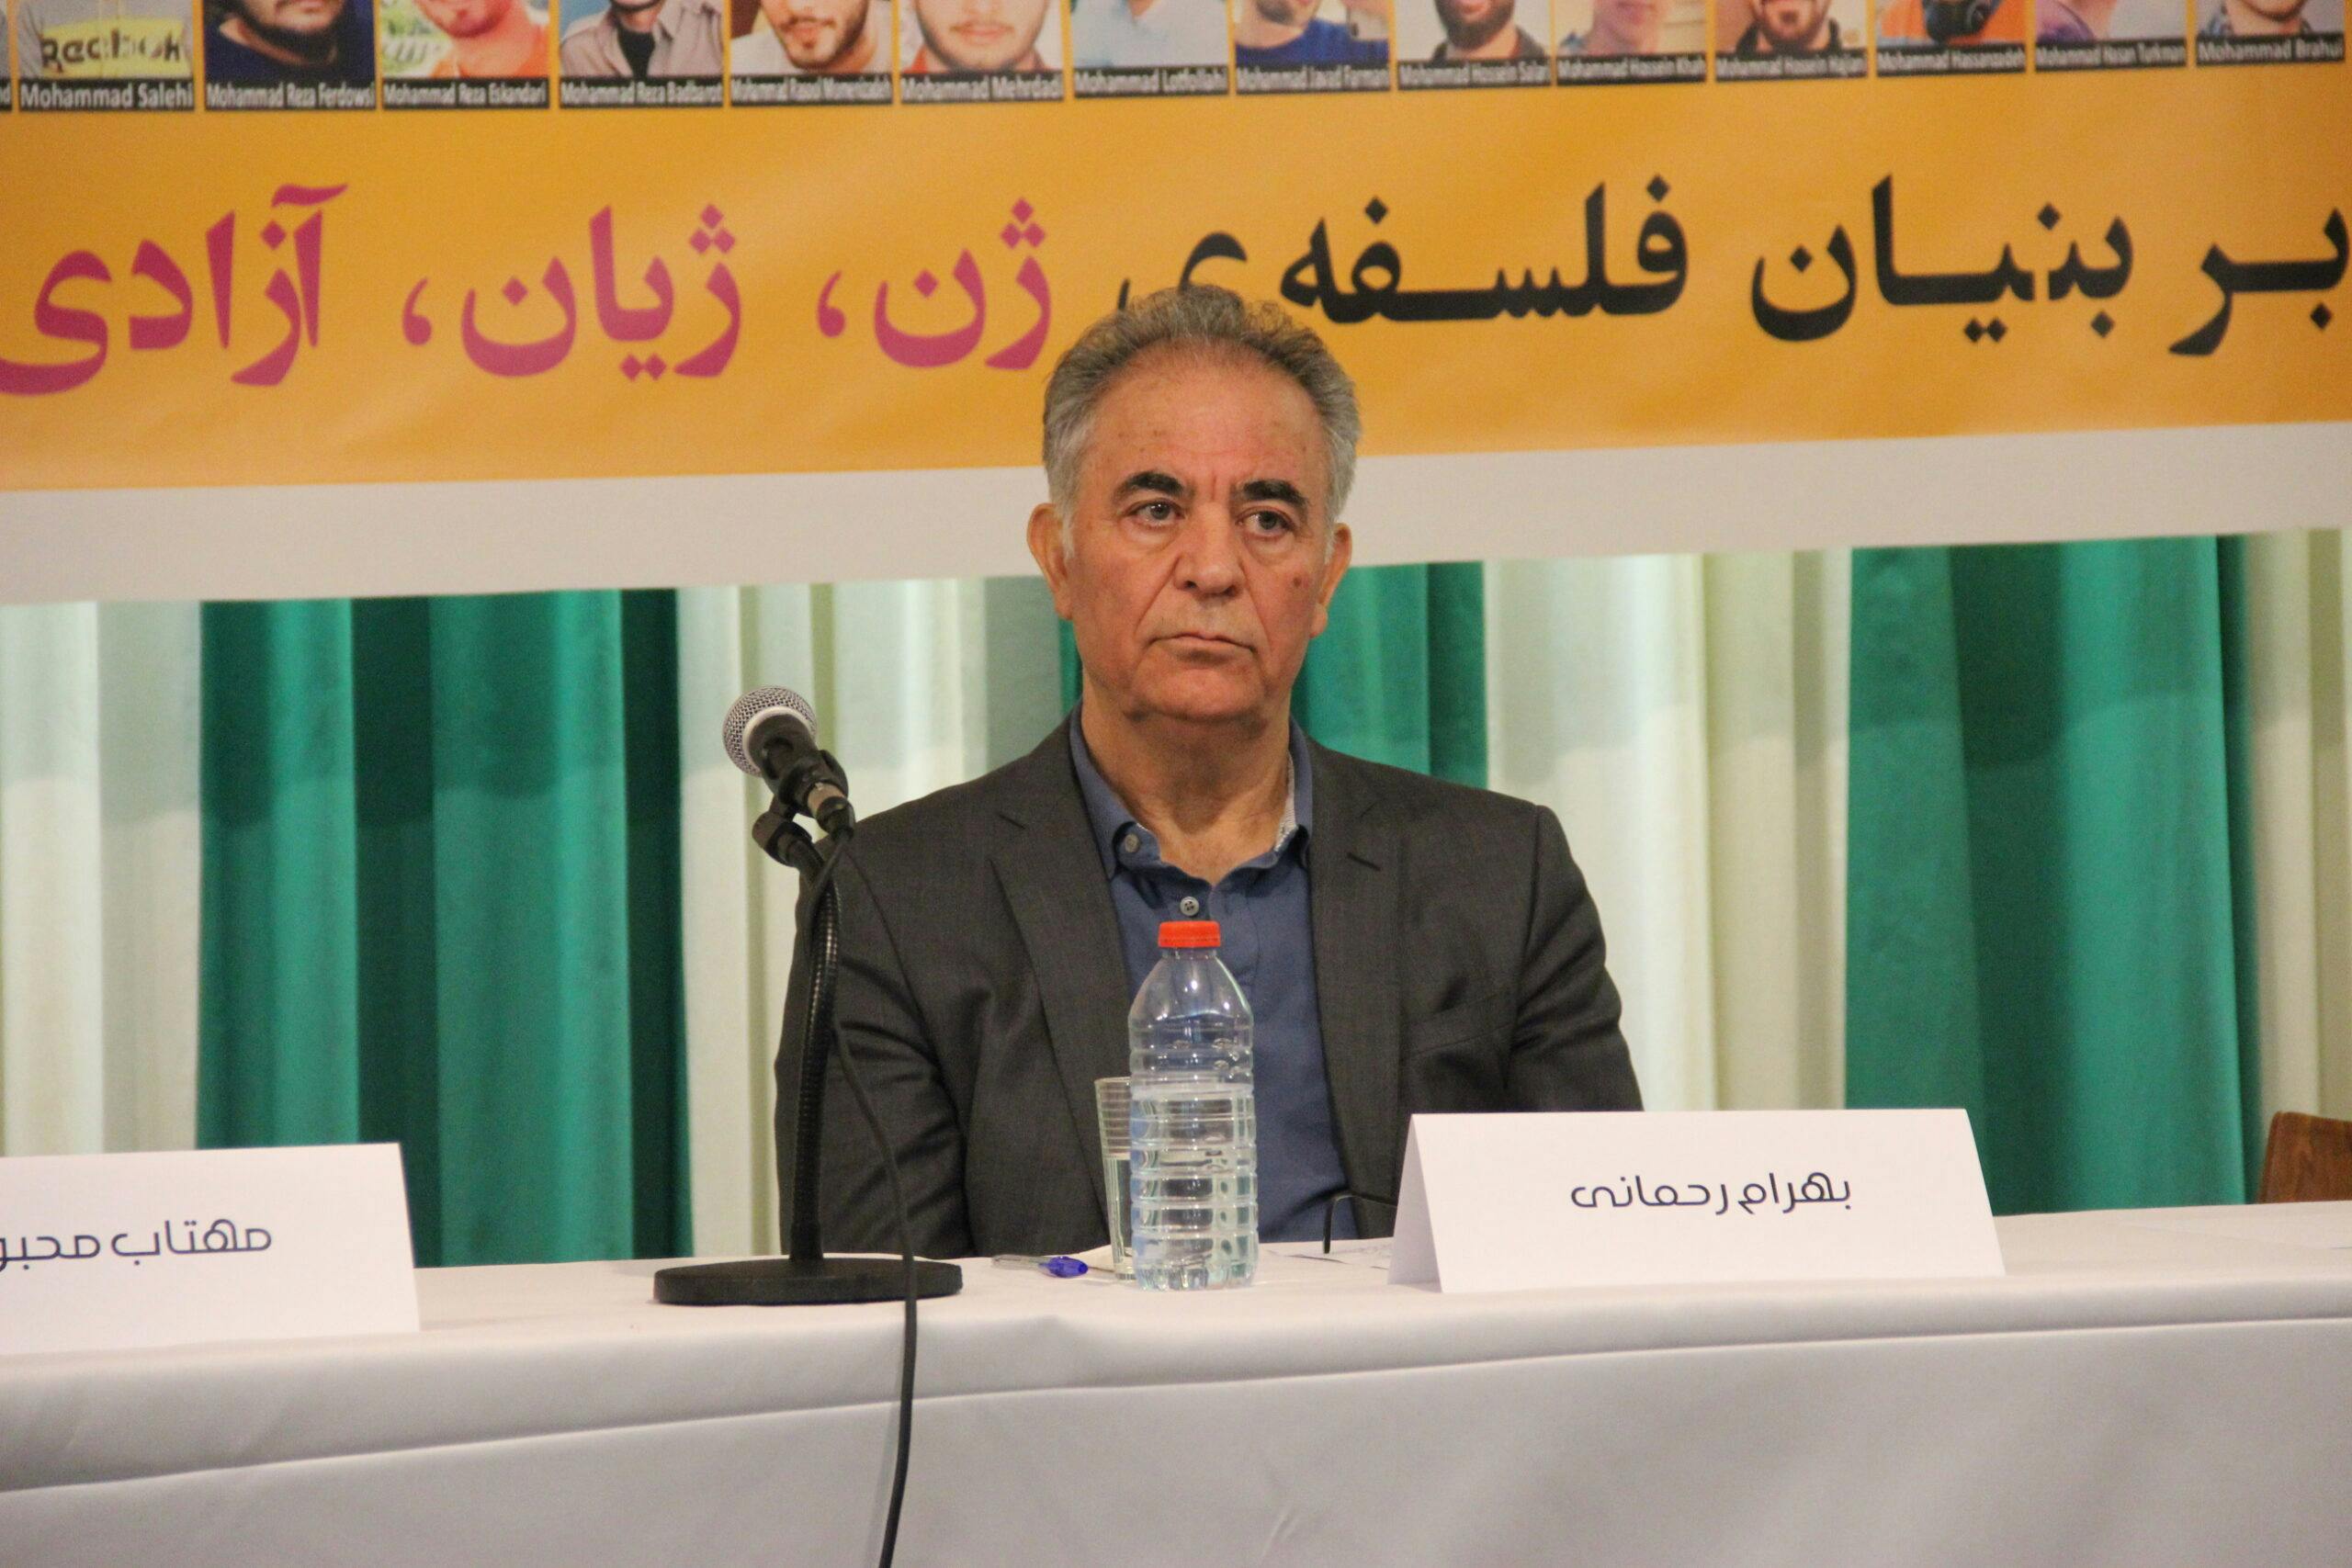 بهرام رحمانی، نویسنده و فعال سیاسی